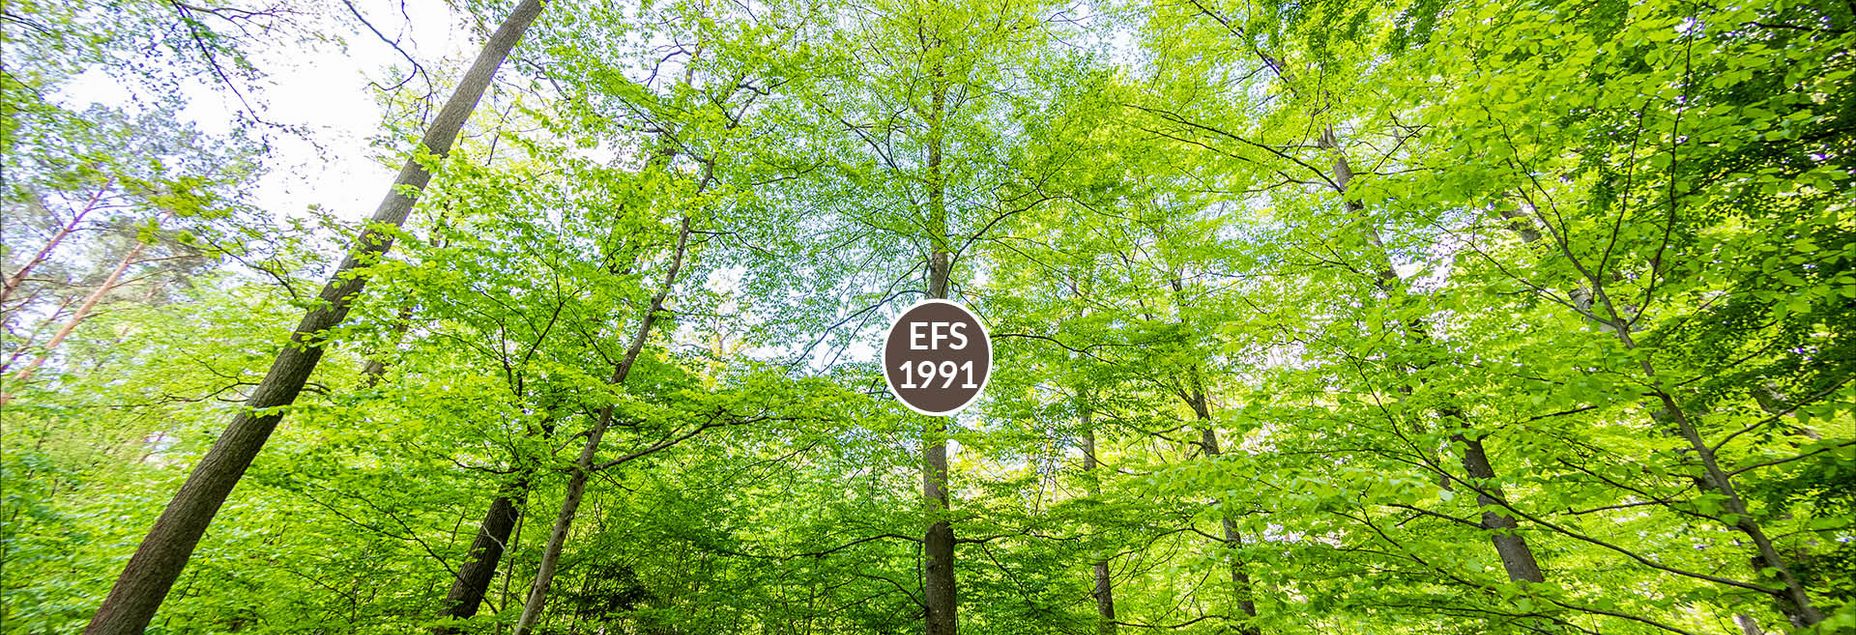 FriedWald-Onlineshop EFS 1991